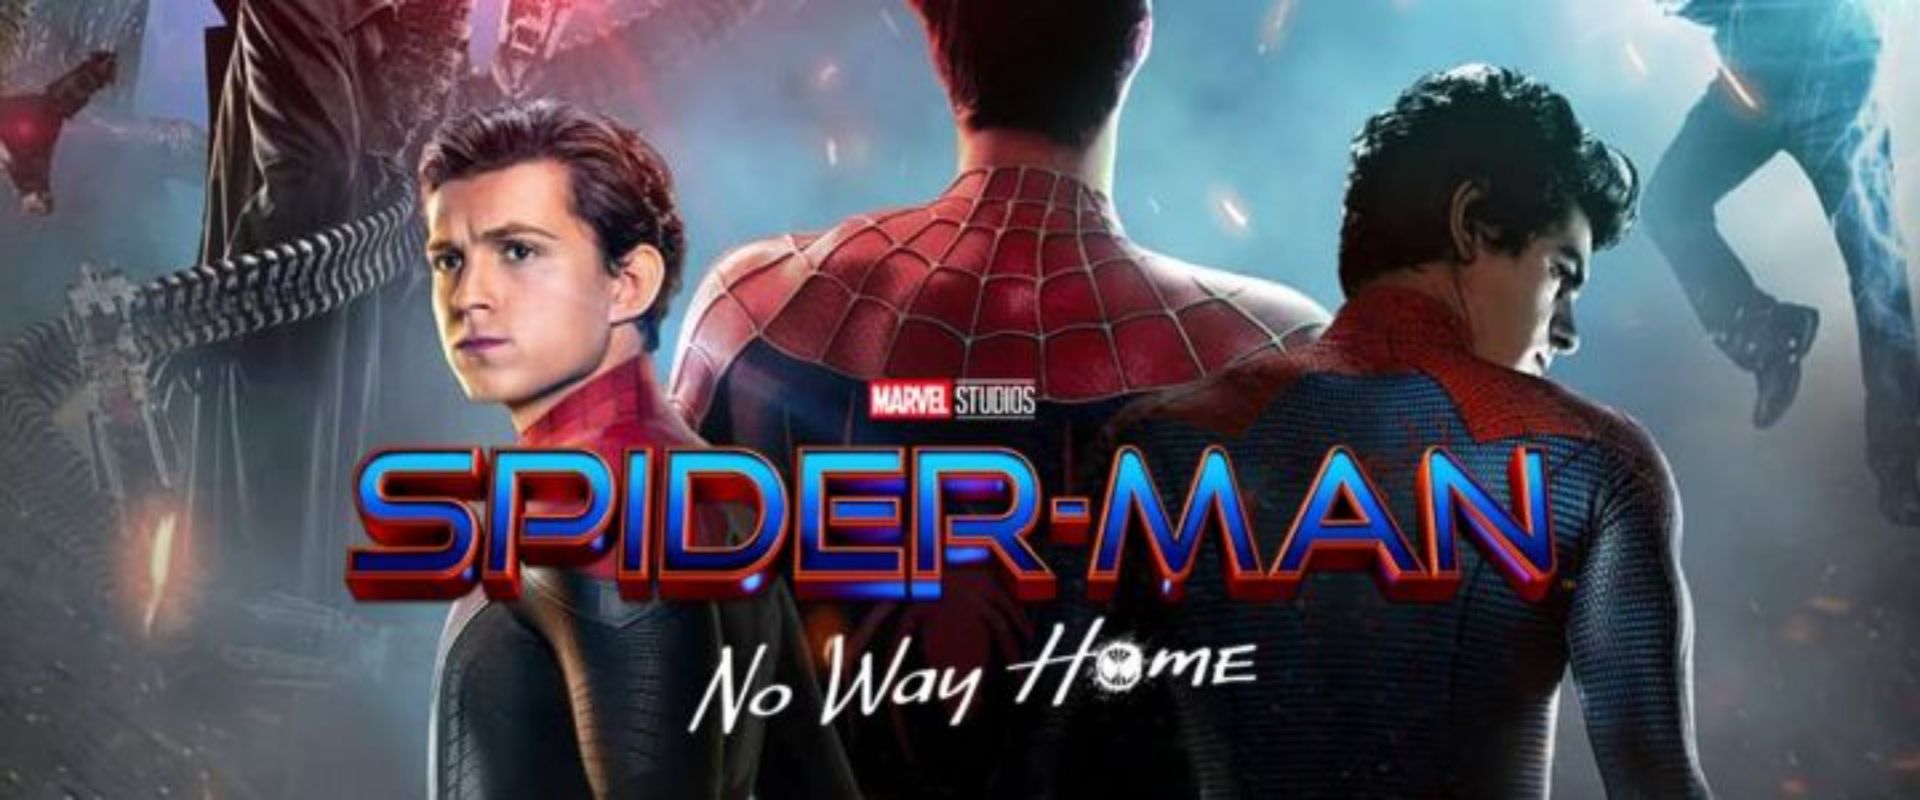 Ganate entradas para ver Spiderman en el cine - Canal 9 Televida Mendoza